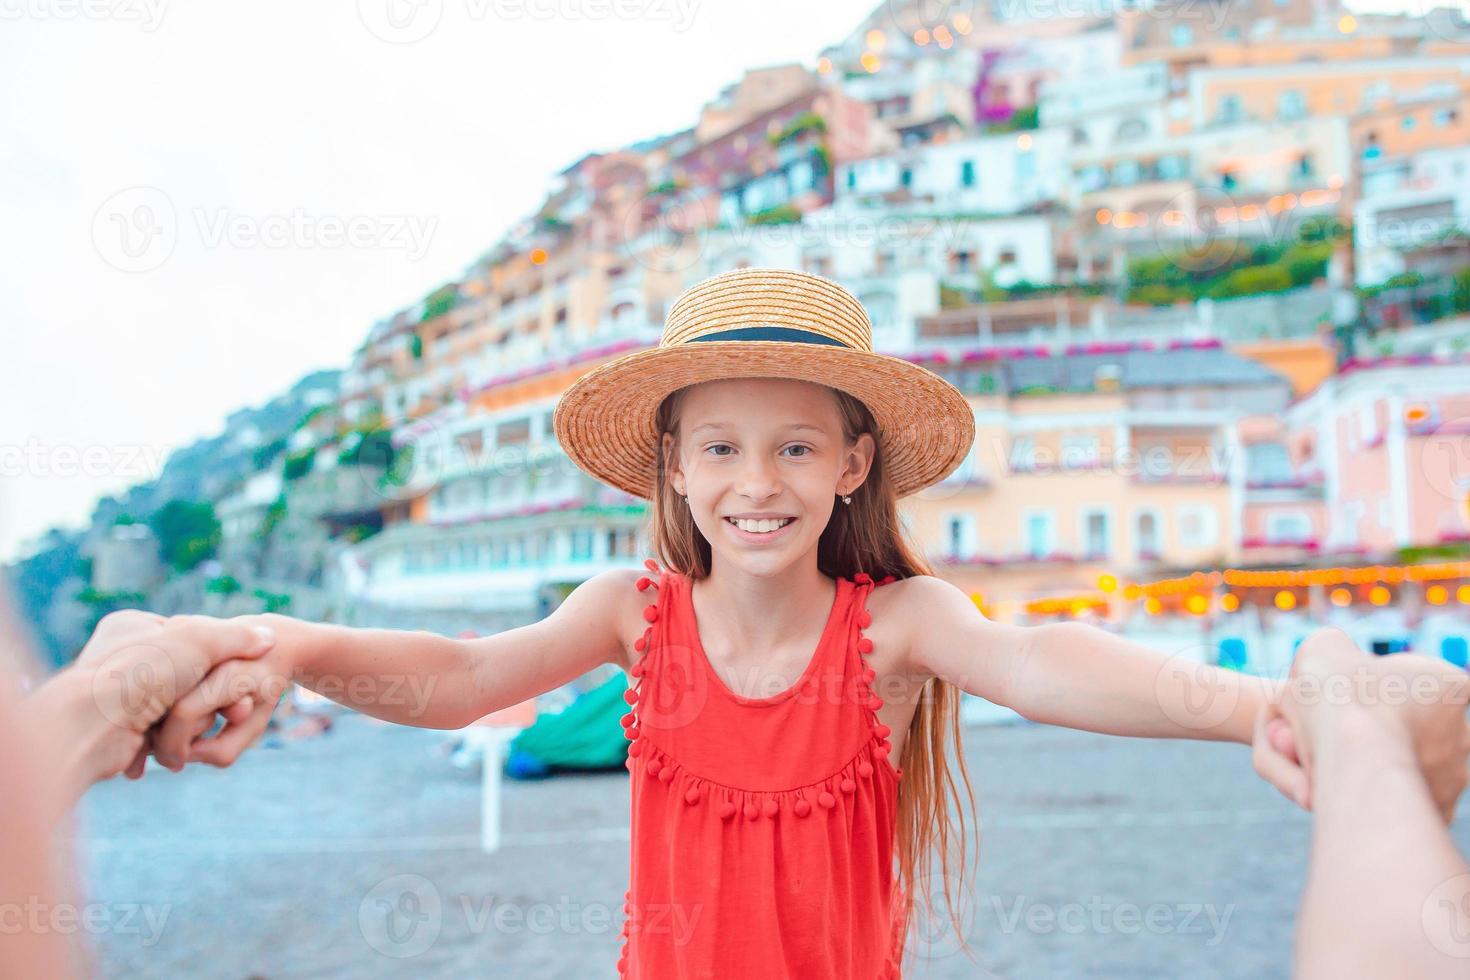 förtjusande liten flicka på värma och solig sommar dag i positano stad i Italien foto